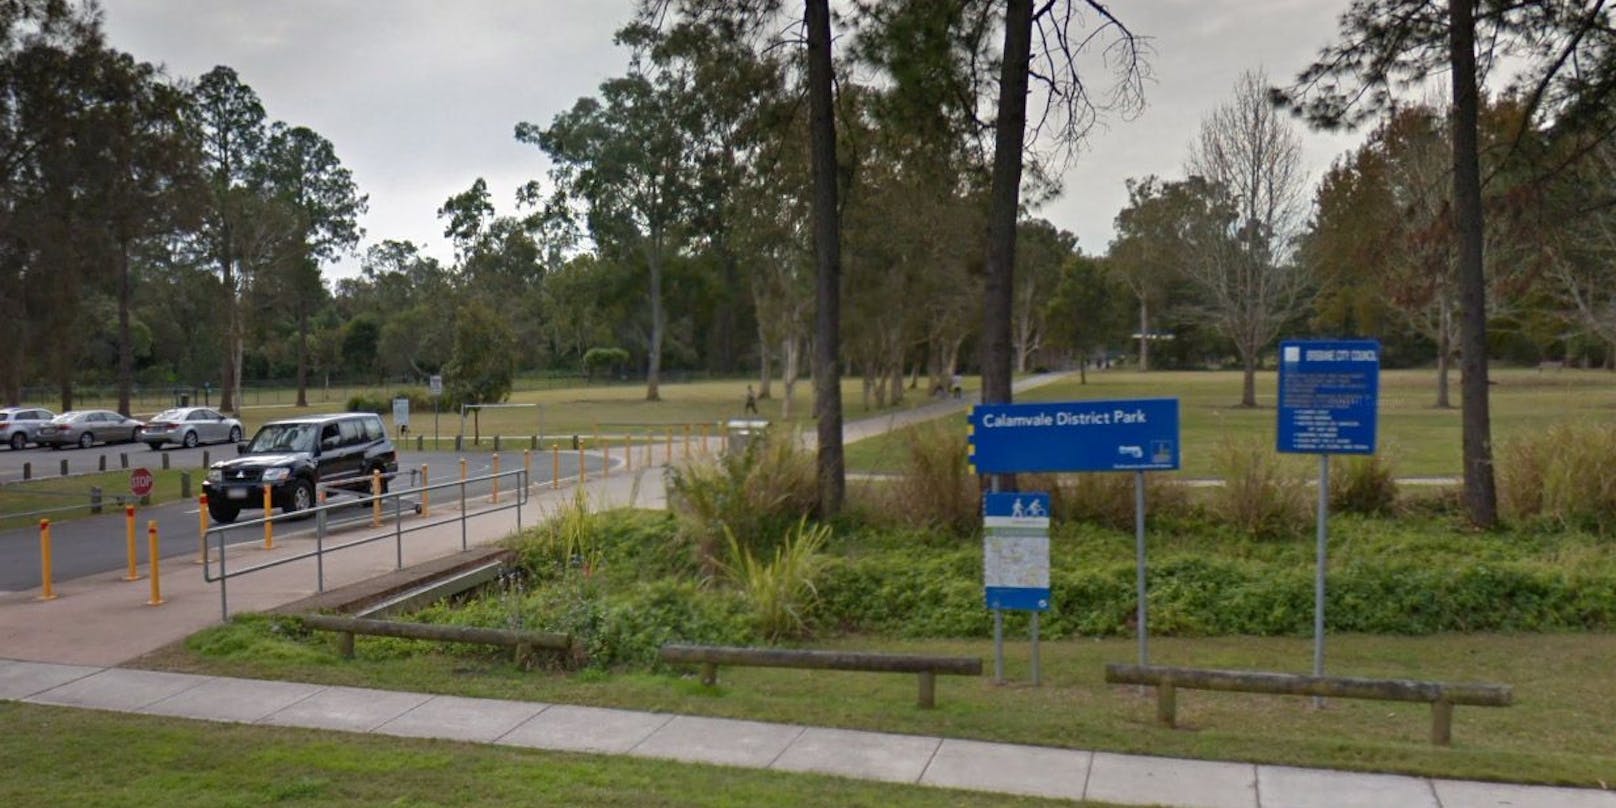 Der Vorfall ereignete sich im Calamvale District Park in Australien.